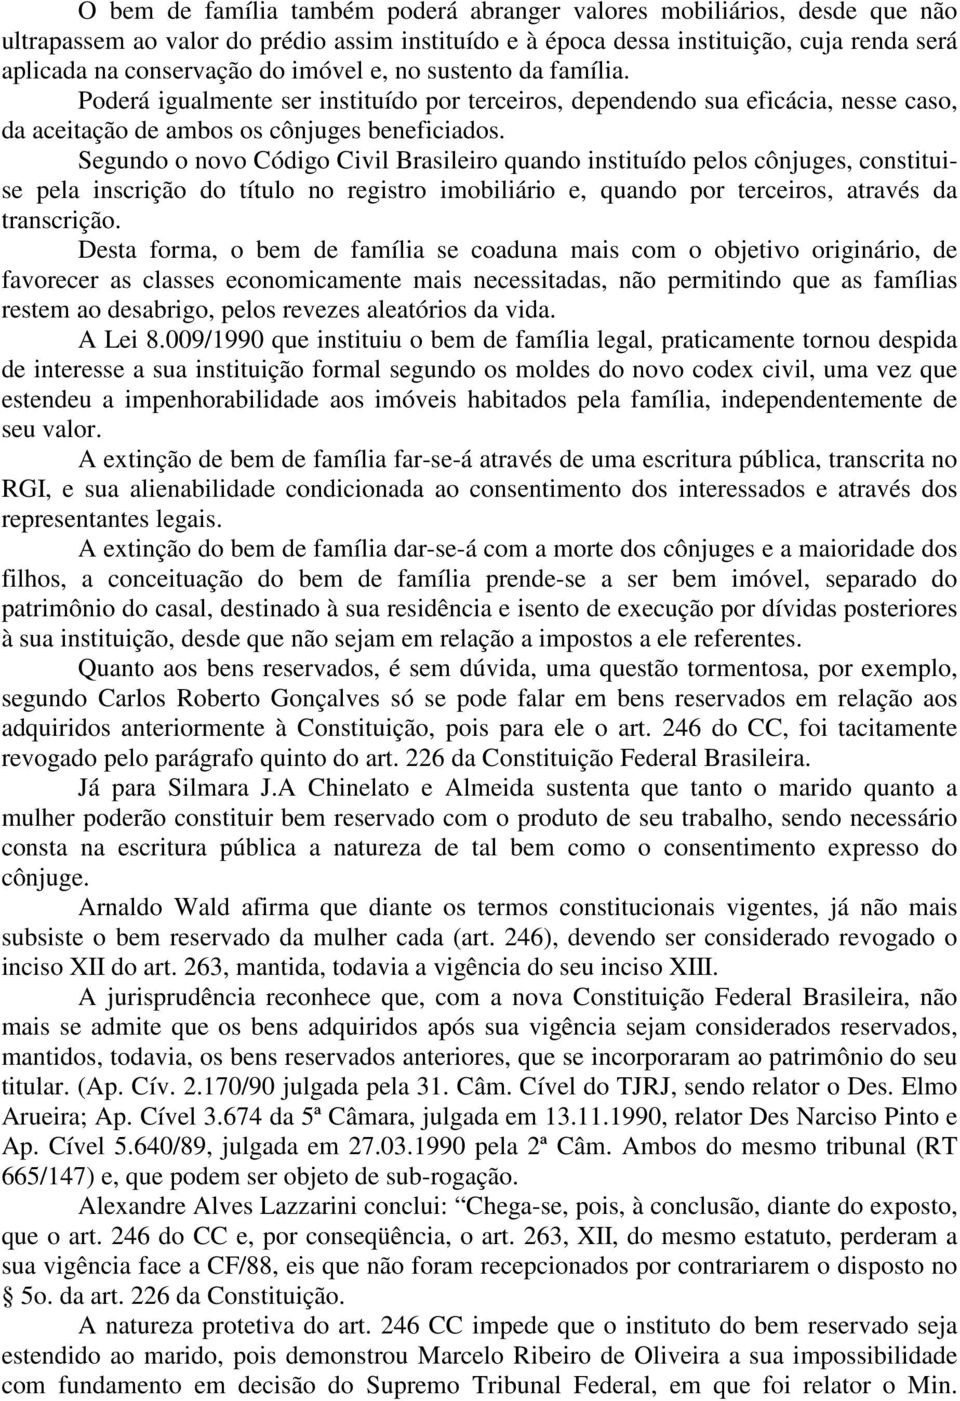 Segundo o novo Código Civil Brasileiro quando instituído pelos cônjuges, constituise pela inscrição do título no registro imobiliário e, quando por terceiros, através da transcrição.